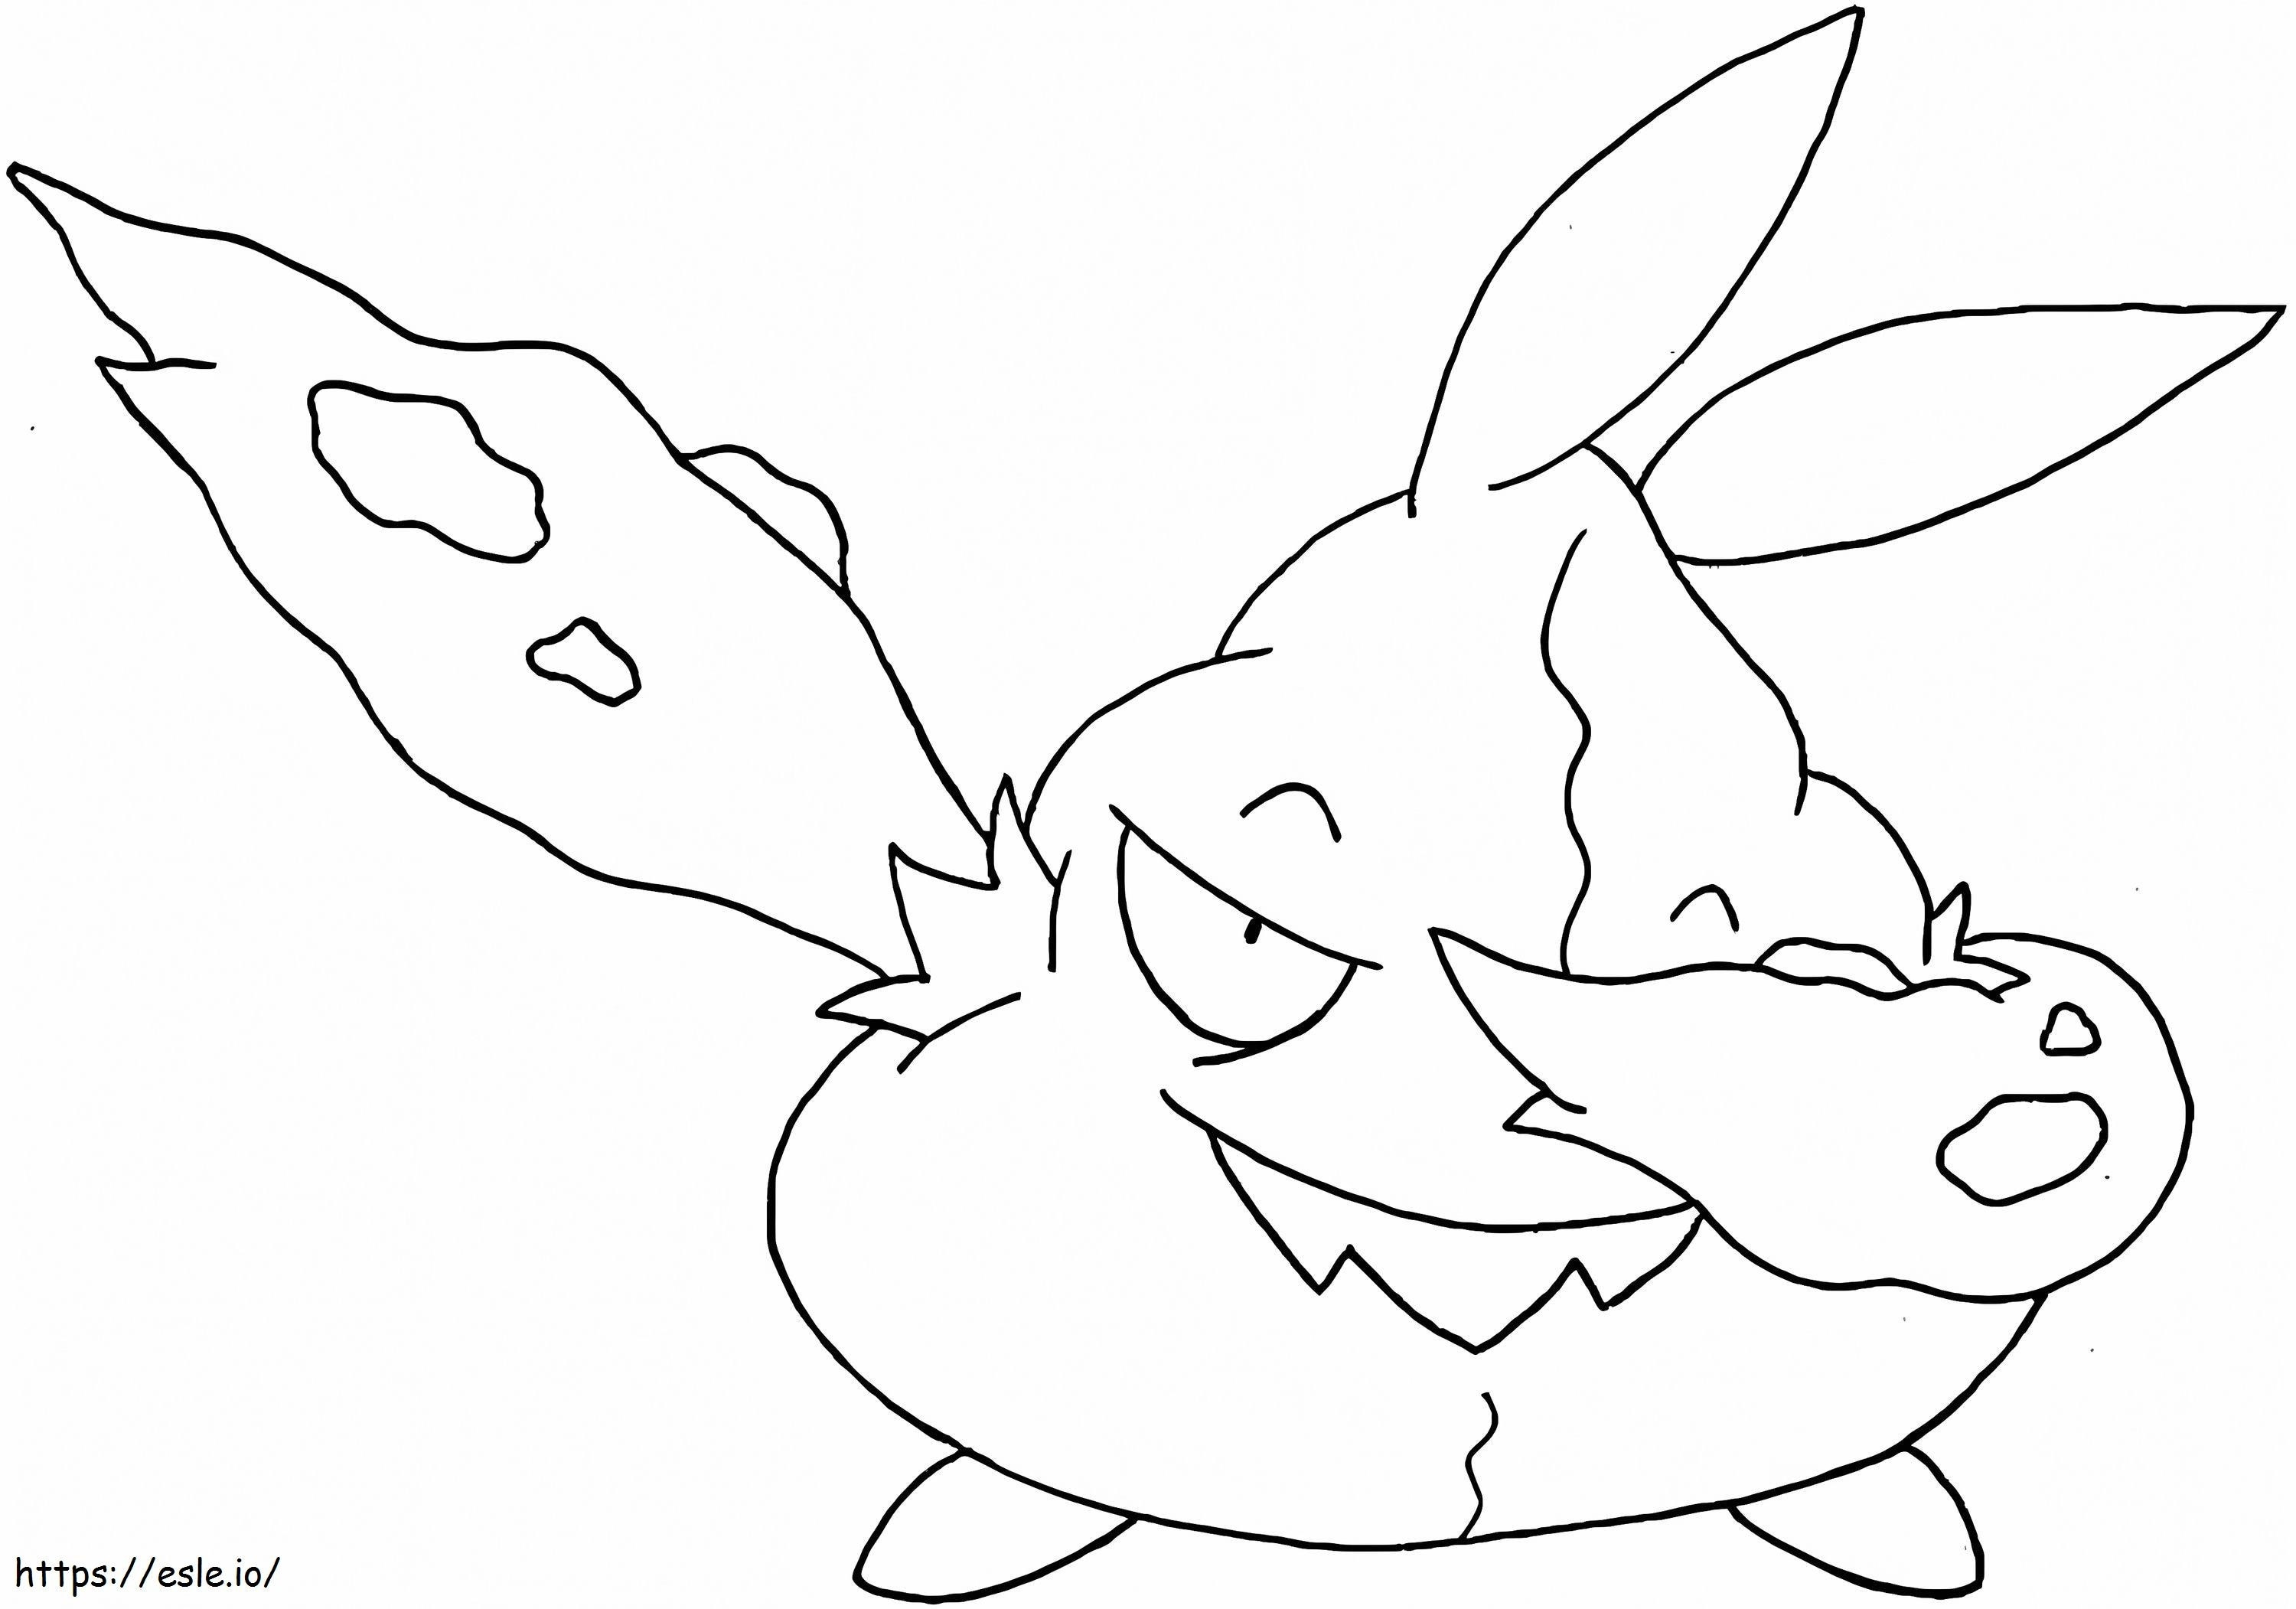 Coloriage Trubbish Pokémon 4 à imprimer dessin